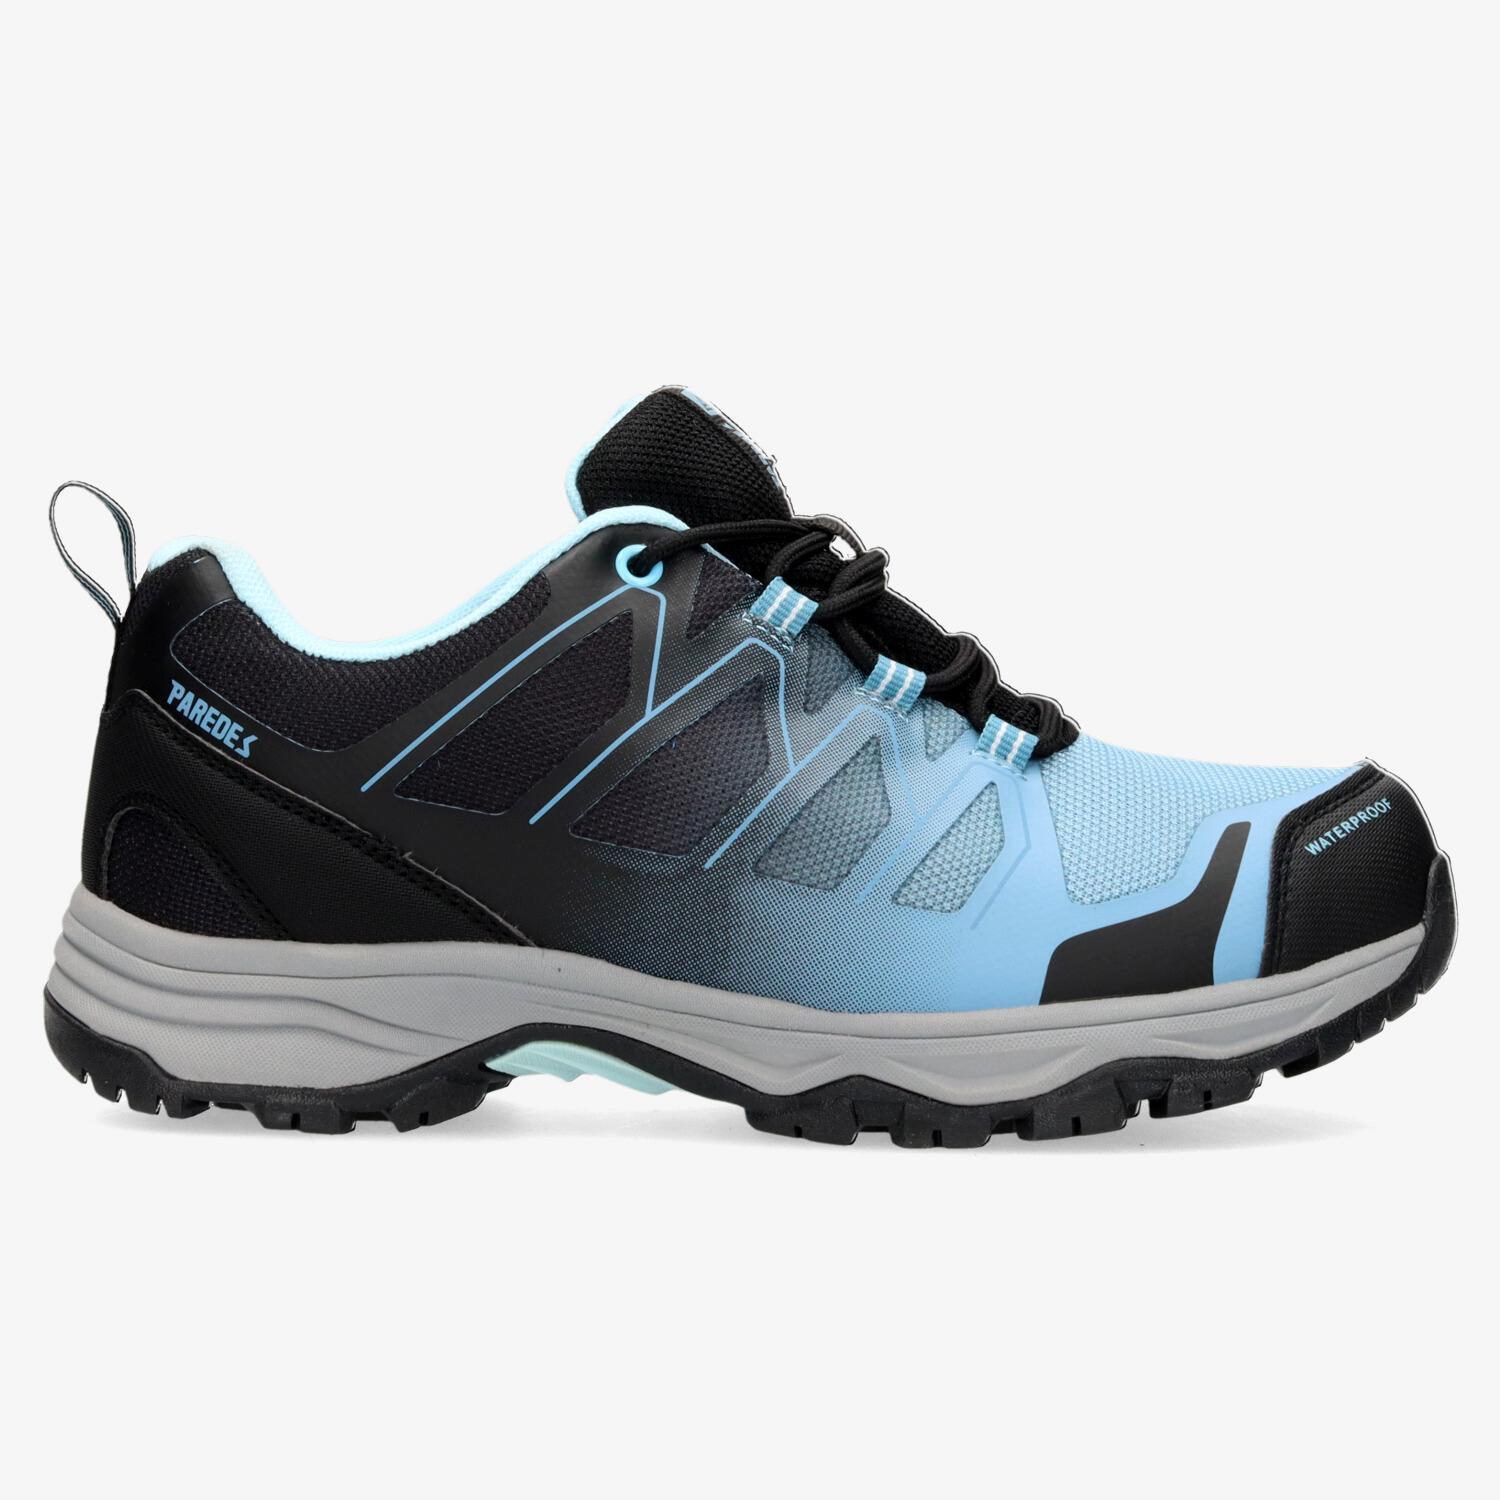 Paredes Taramundi - Noir - Chaussures de randonnée femme sports taille 38